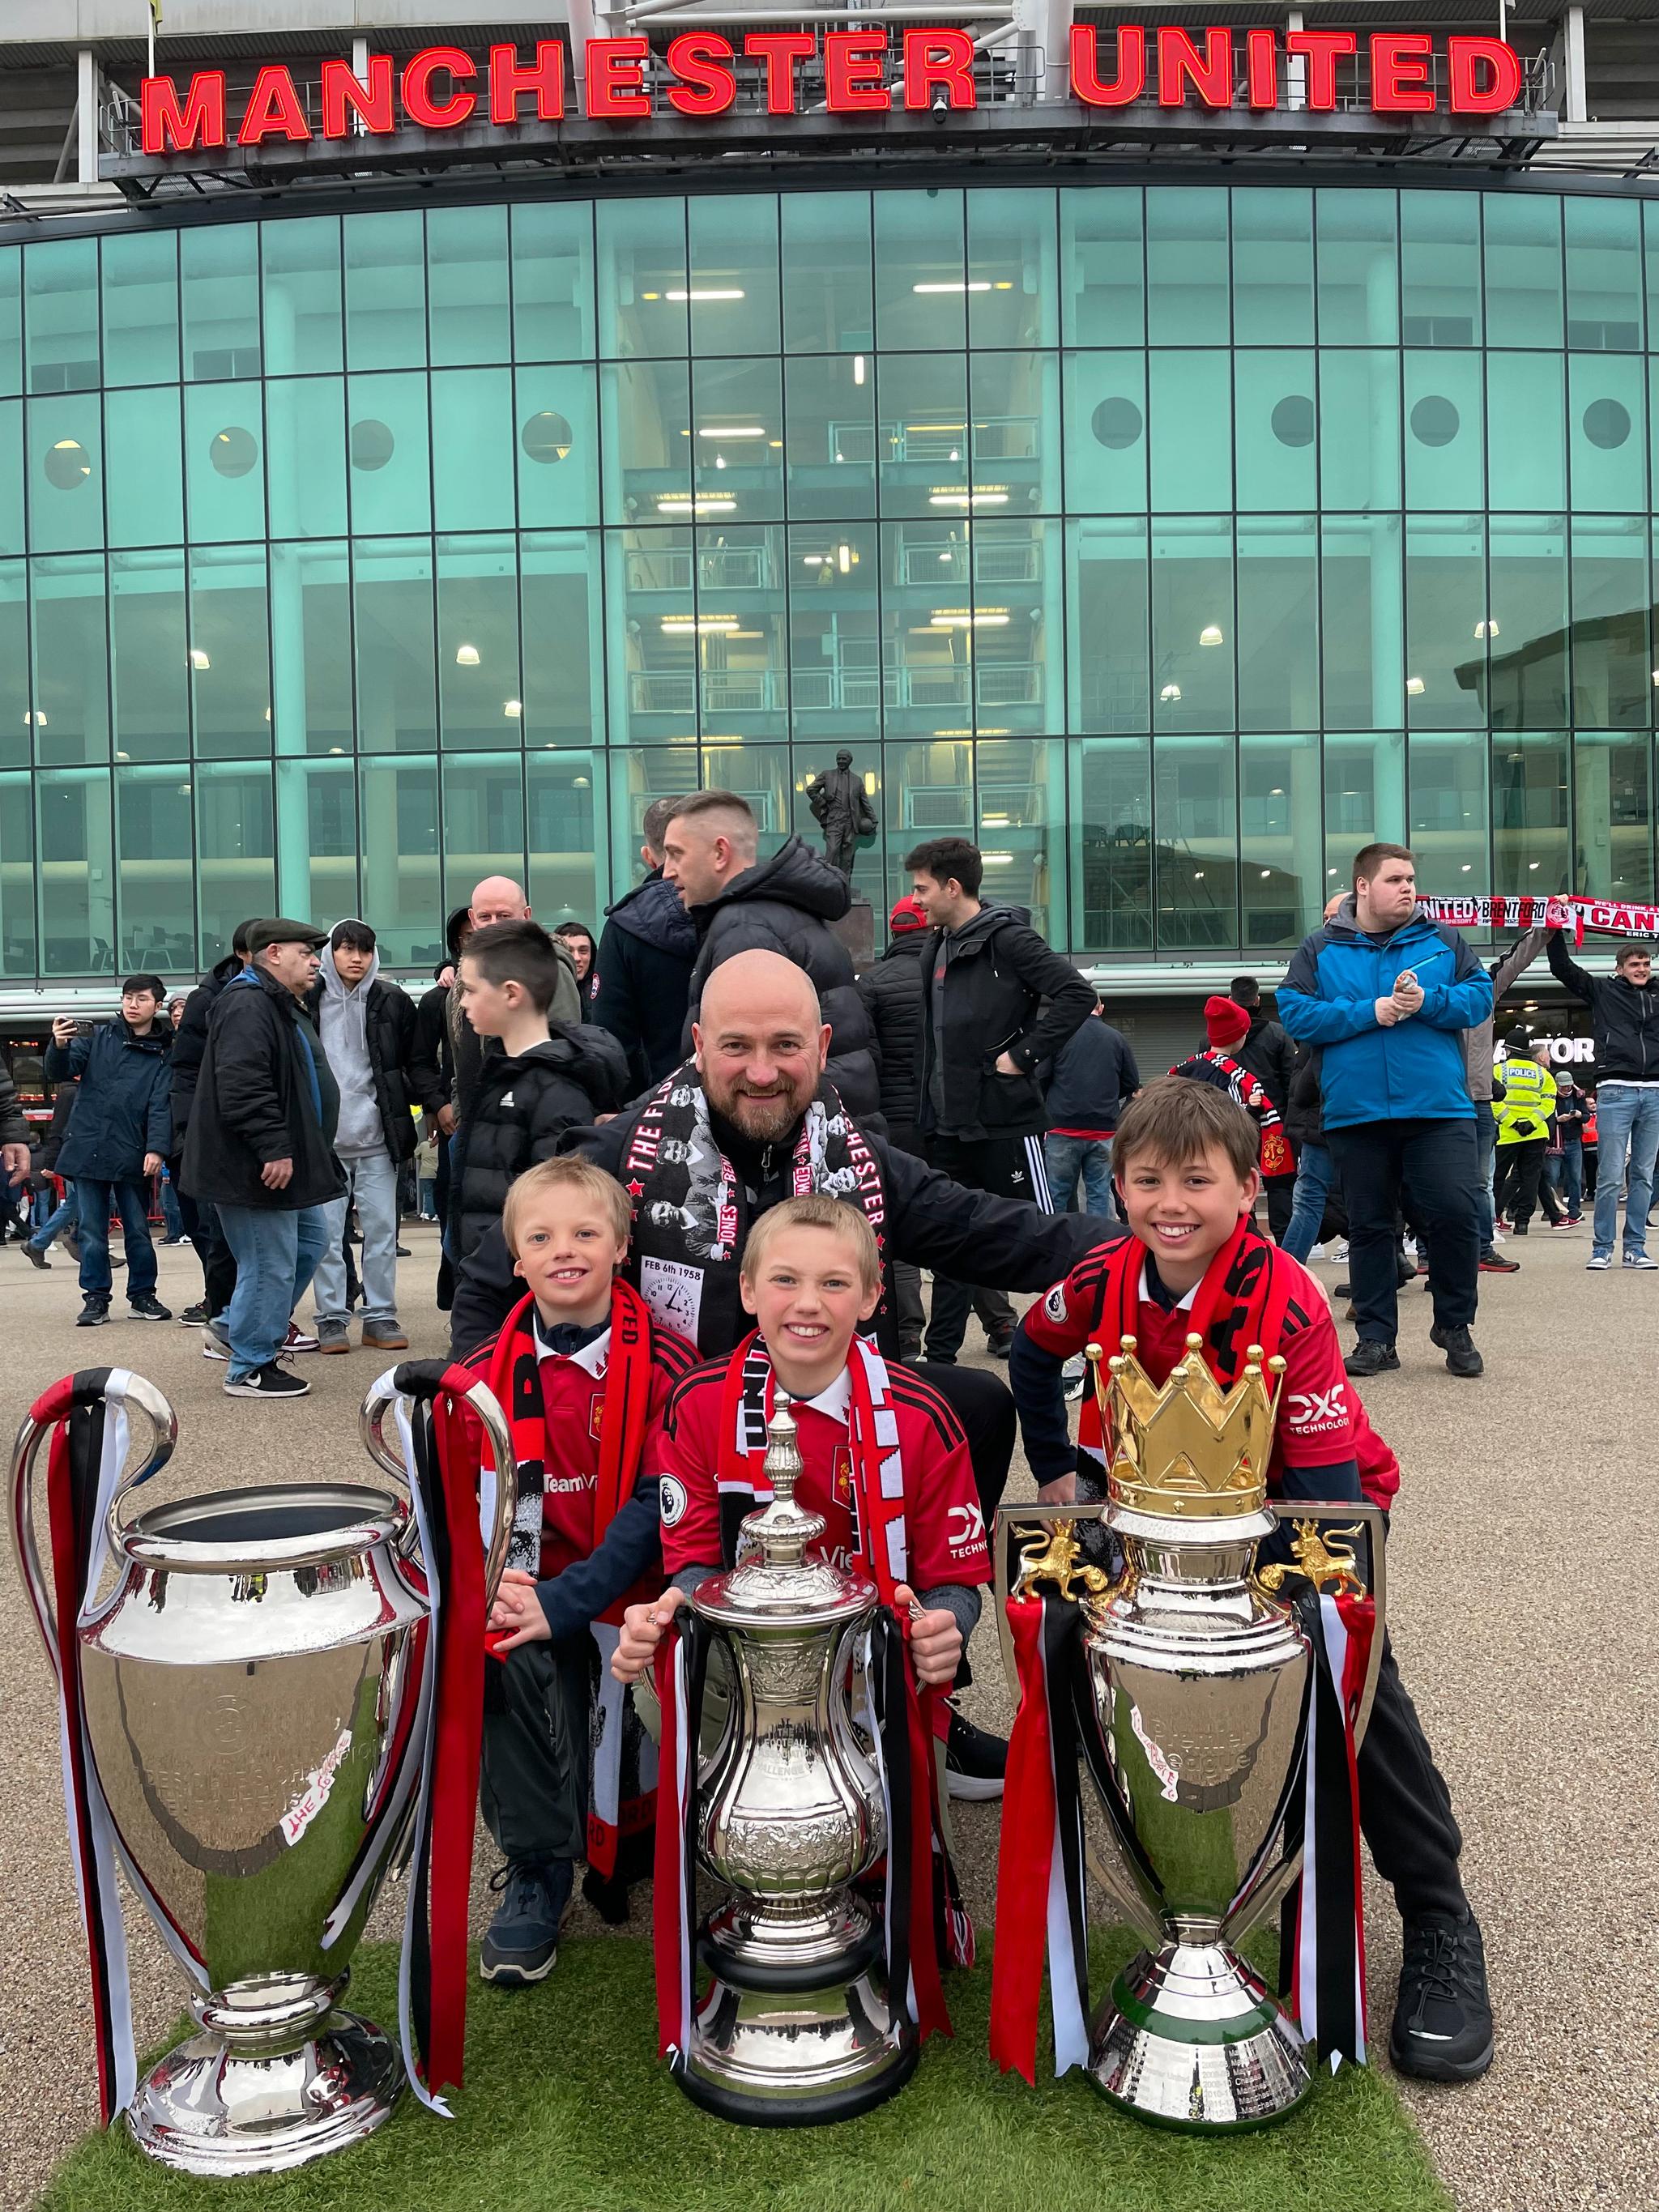 THE TREBLE: Her poserer de utenfor Old Trafford sammen med trofeene som ble vunnet i den legendariske 1999-sesongen, da Manchester United vant både Premier League, Champions League og FA-cupen.